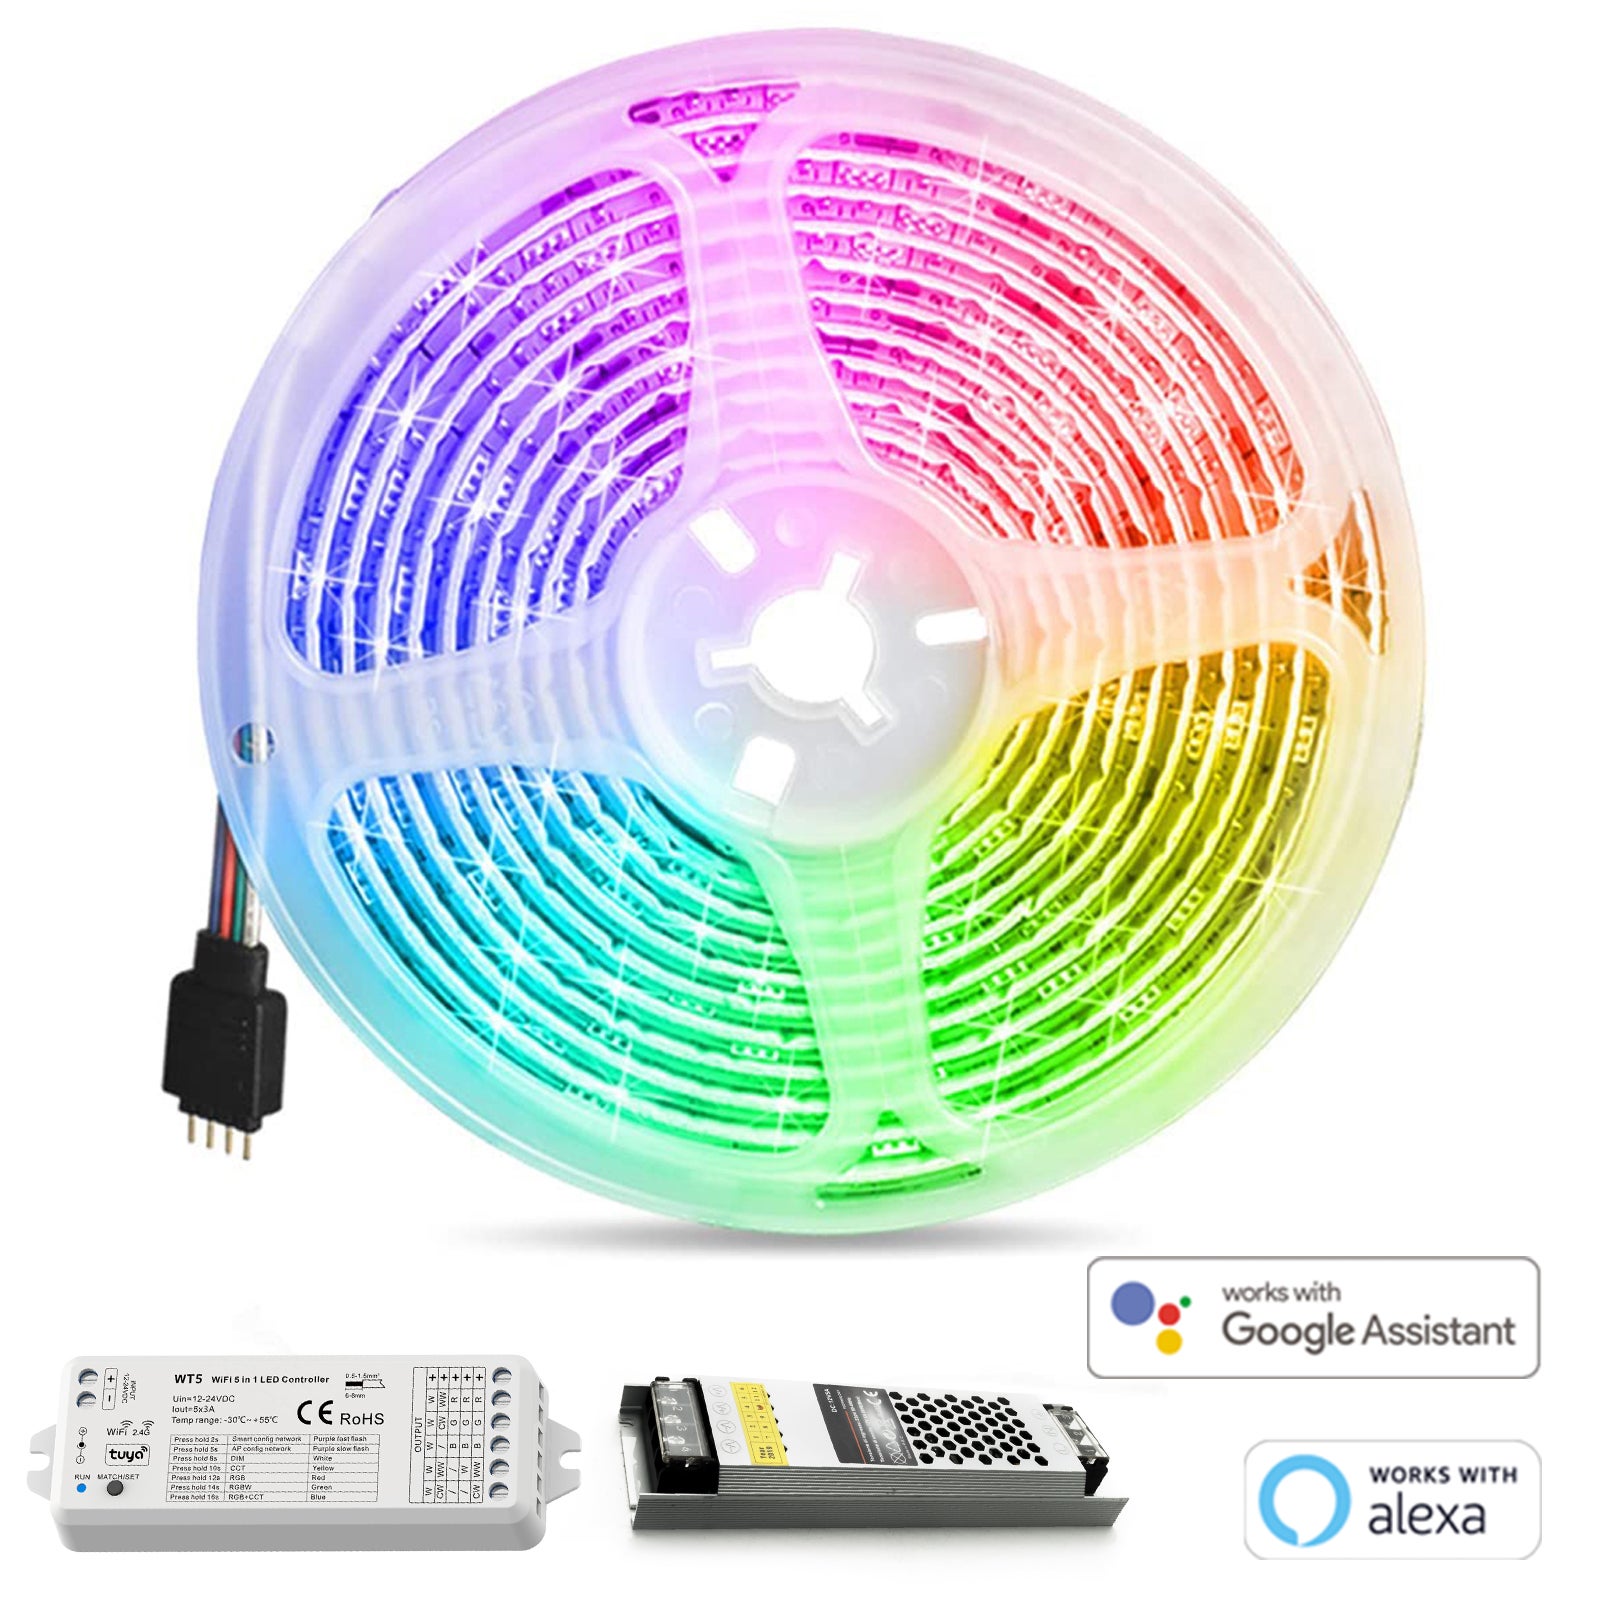 SET SMART striscia 12V LED RGB multicolore WiFi centralina intelligente  Alexa Google controllo remoto APP smartphone luce decorativa 5 metri